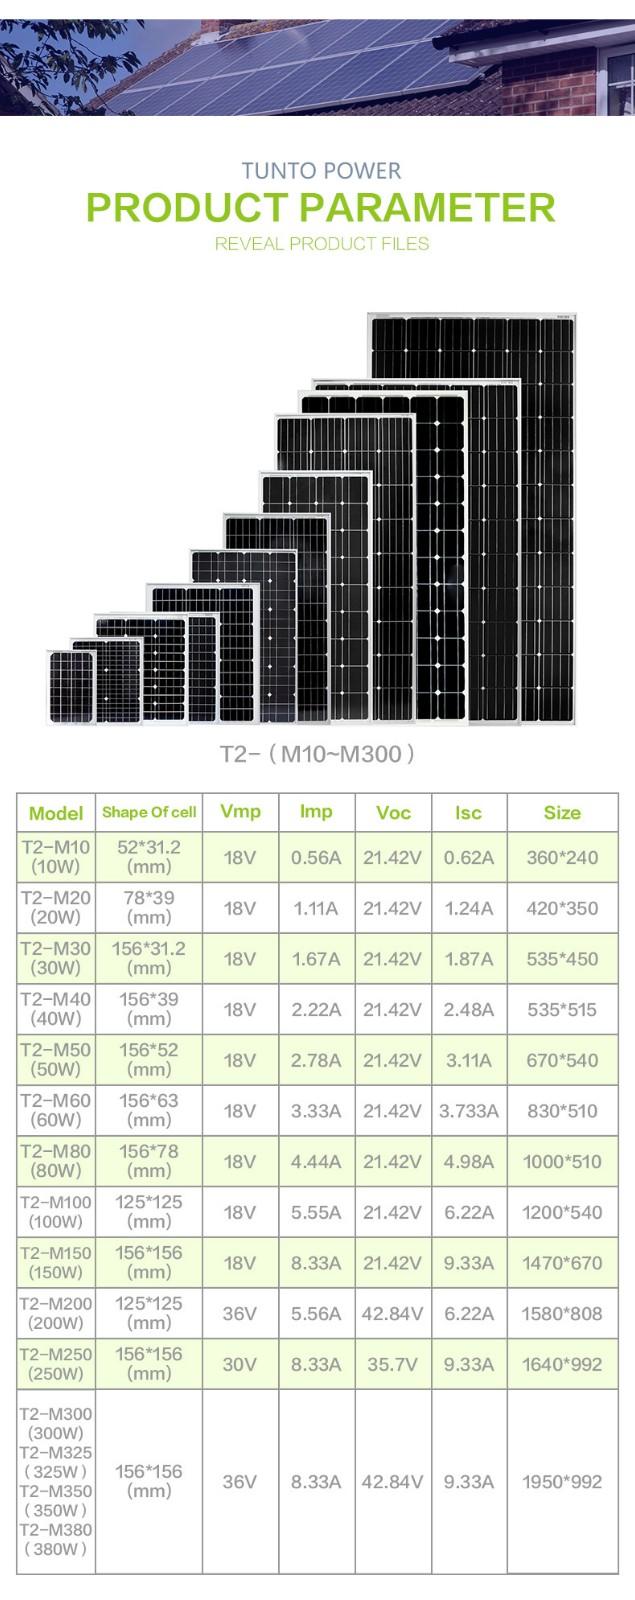 Tunto polycrystalline best off grid solar system 40w for farm